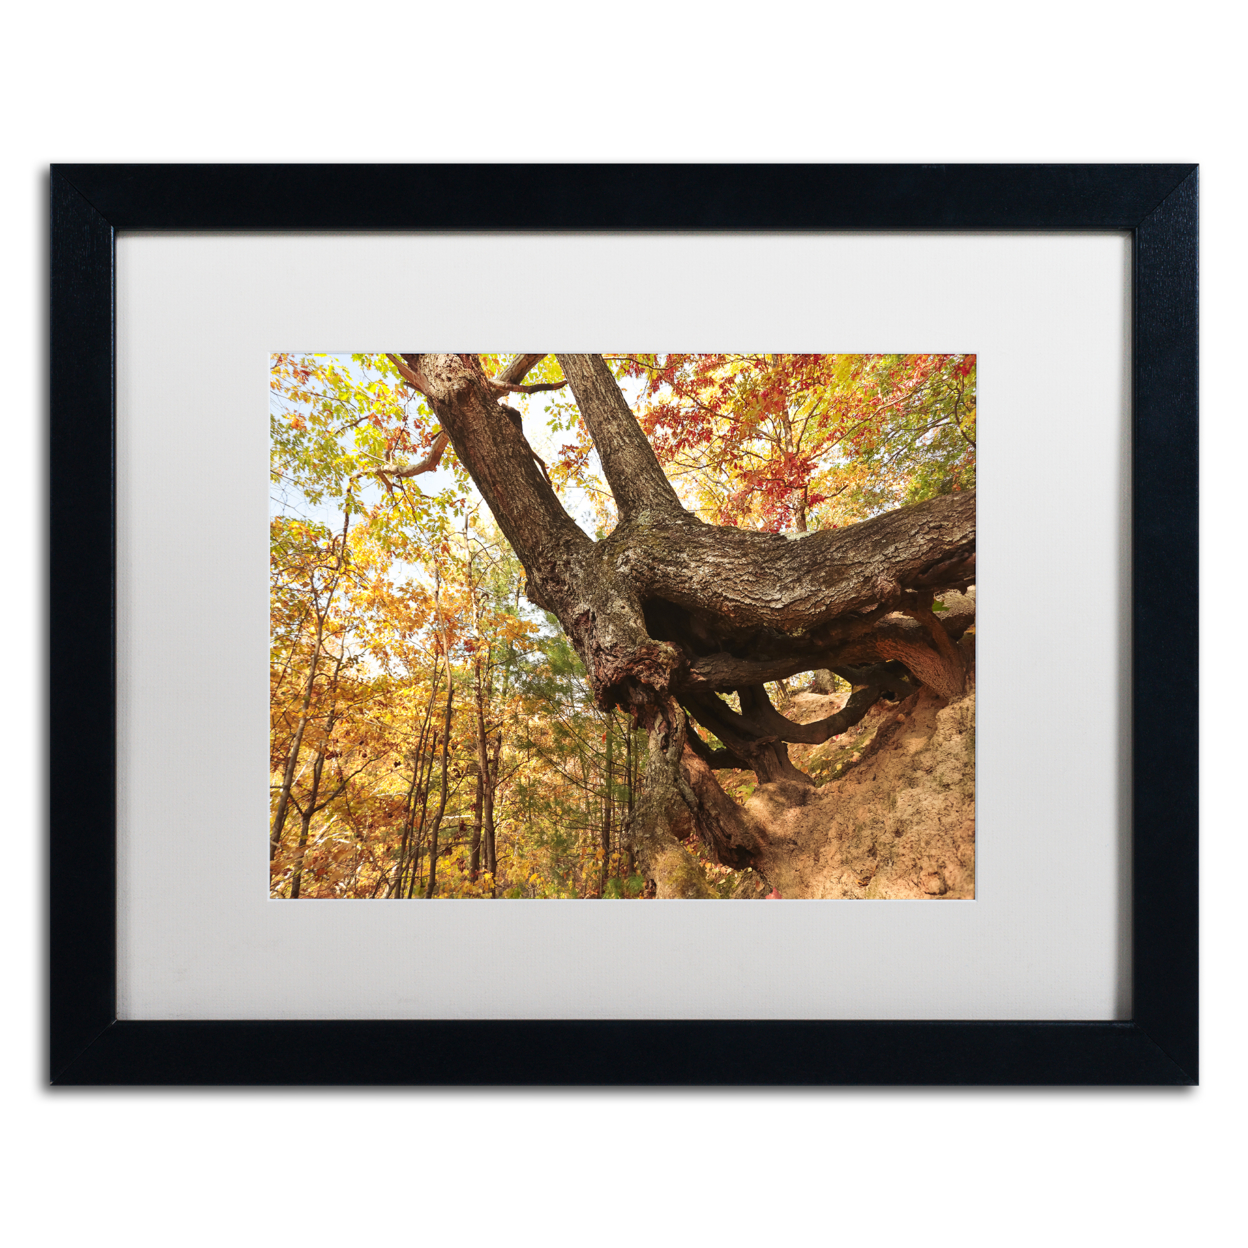 Jason Shaffer 'Tree Of Shelter' Black Wooden Framed Art 18 X 22 Inches